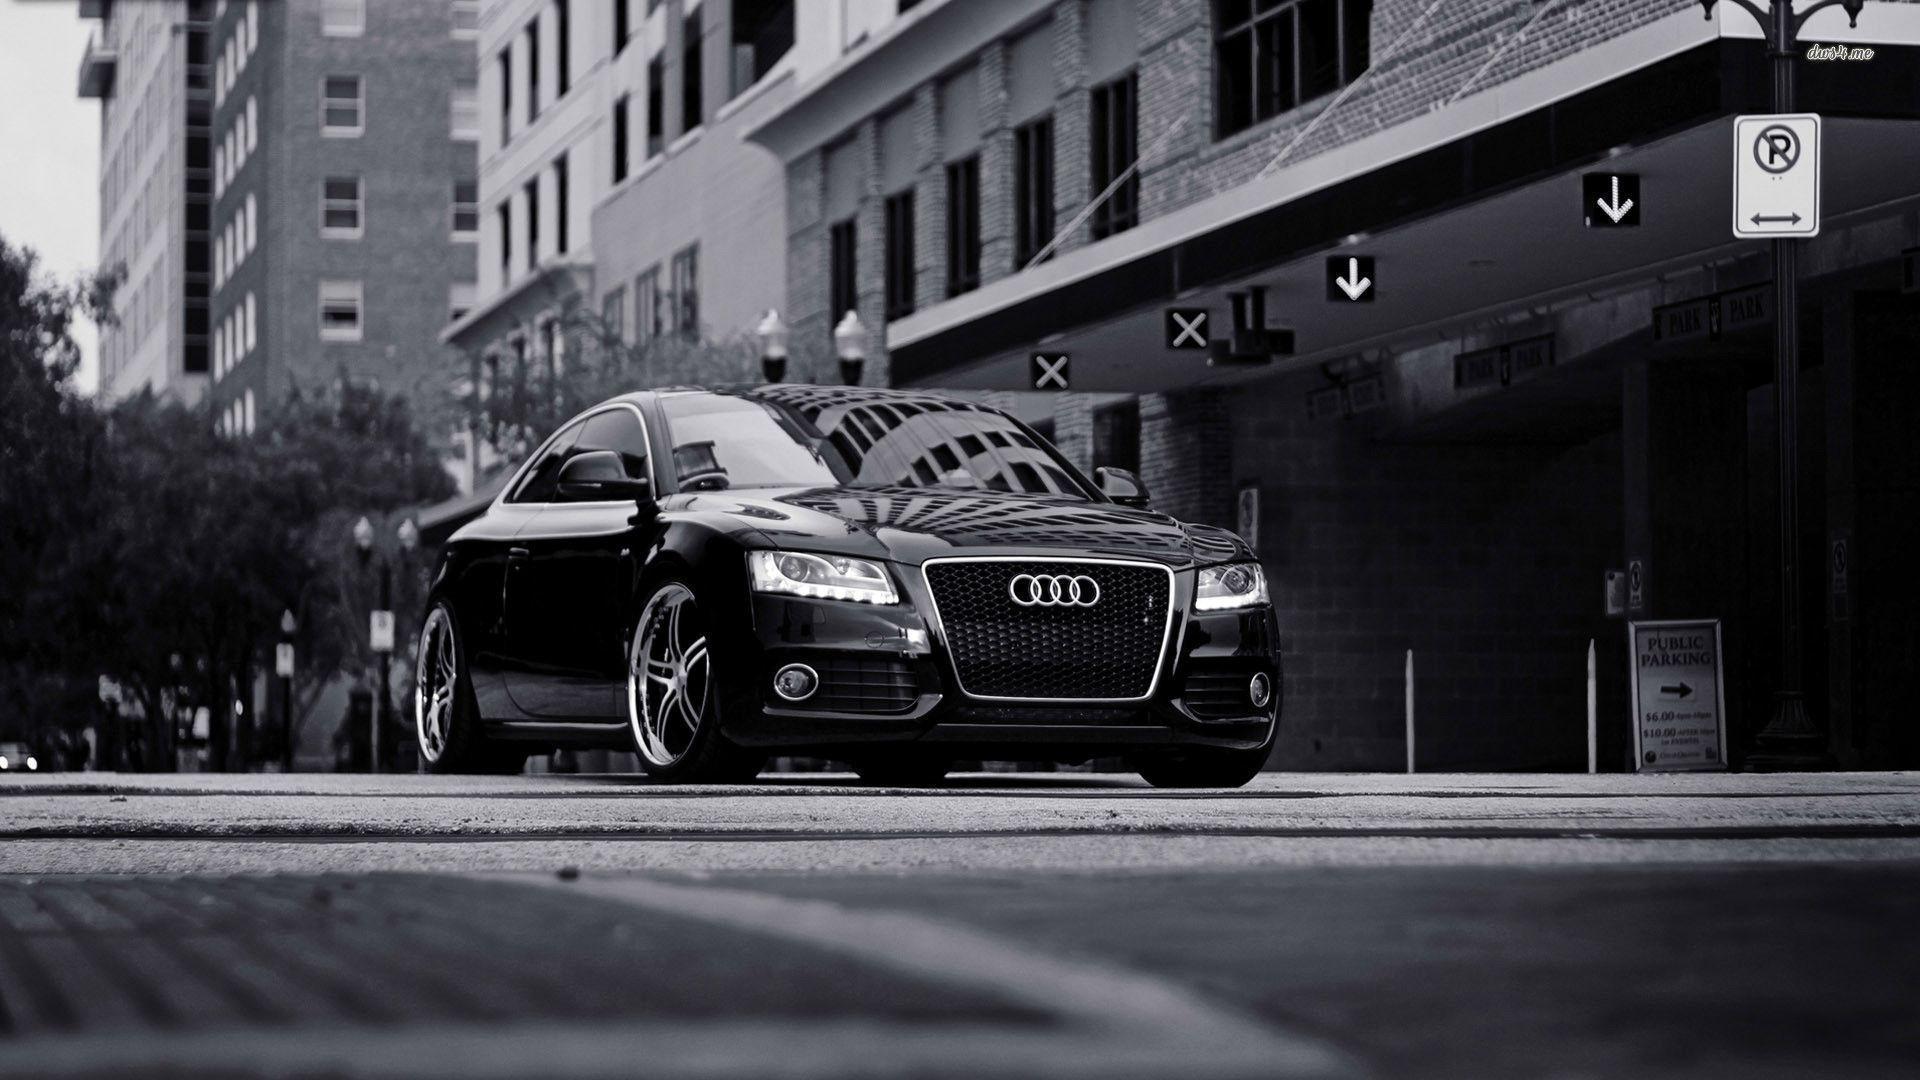 Audi A5 Wallpaper Download